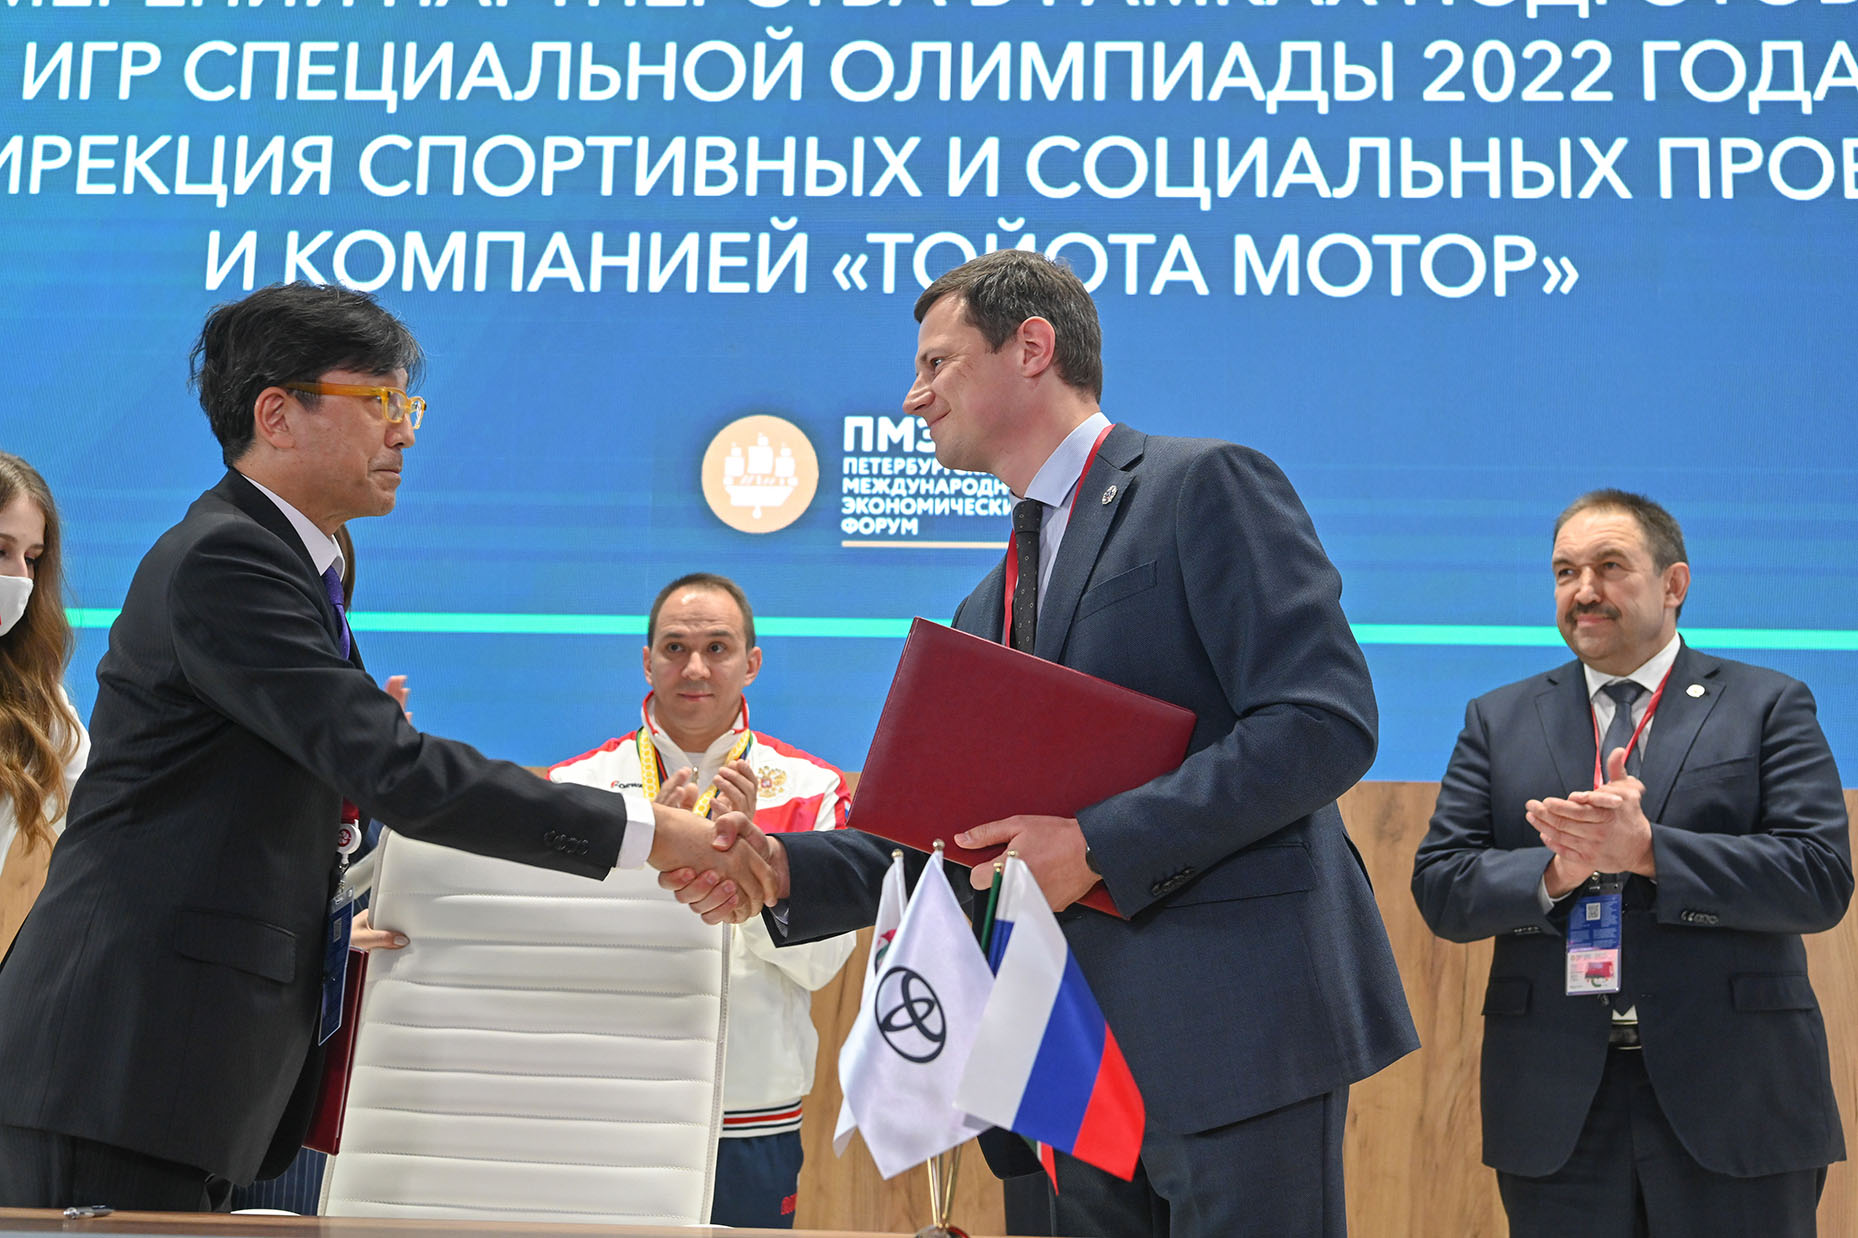 Специальная Олимпиада в России пройдет при поддержке Тойота Мотор